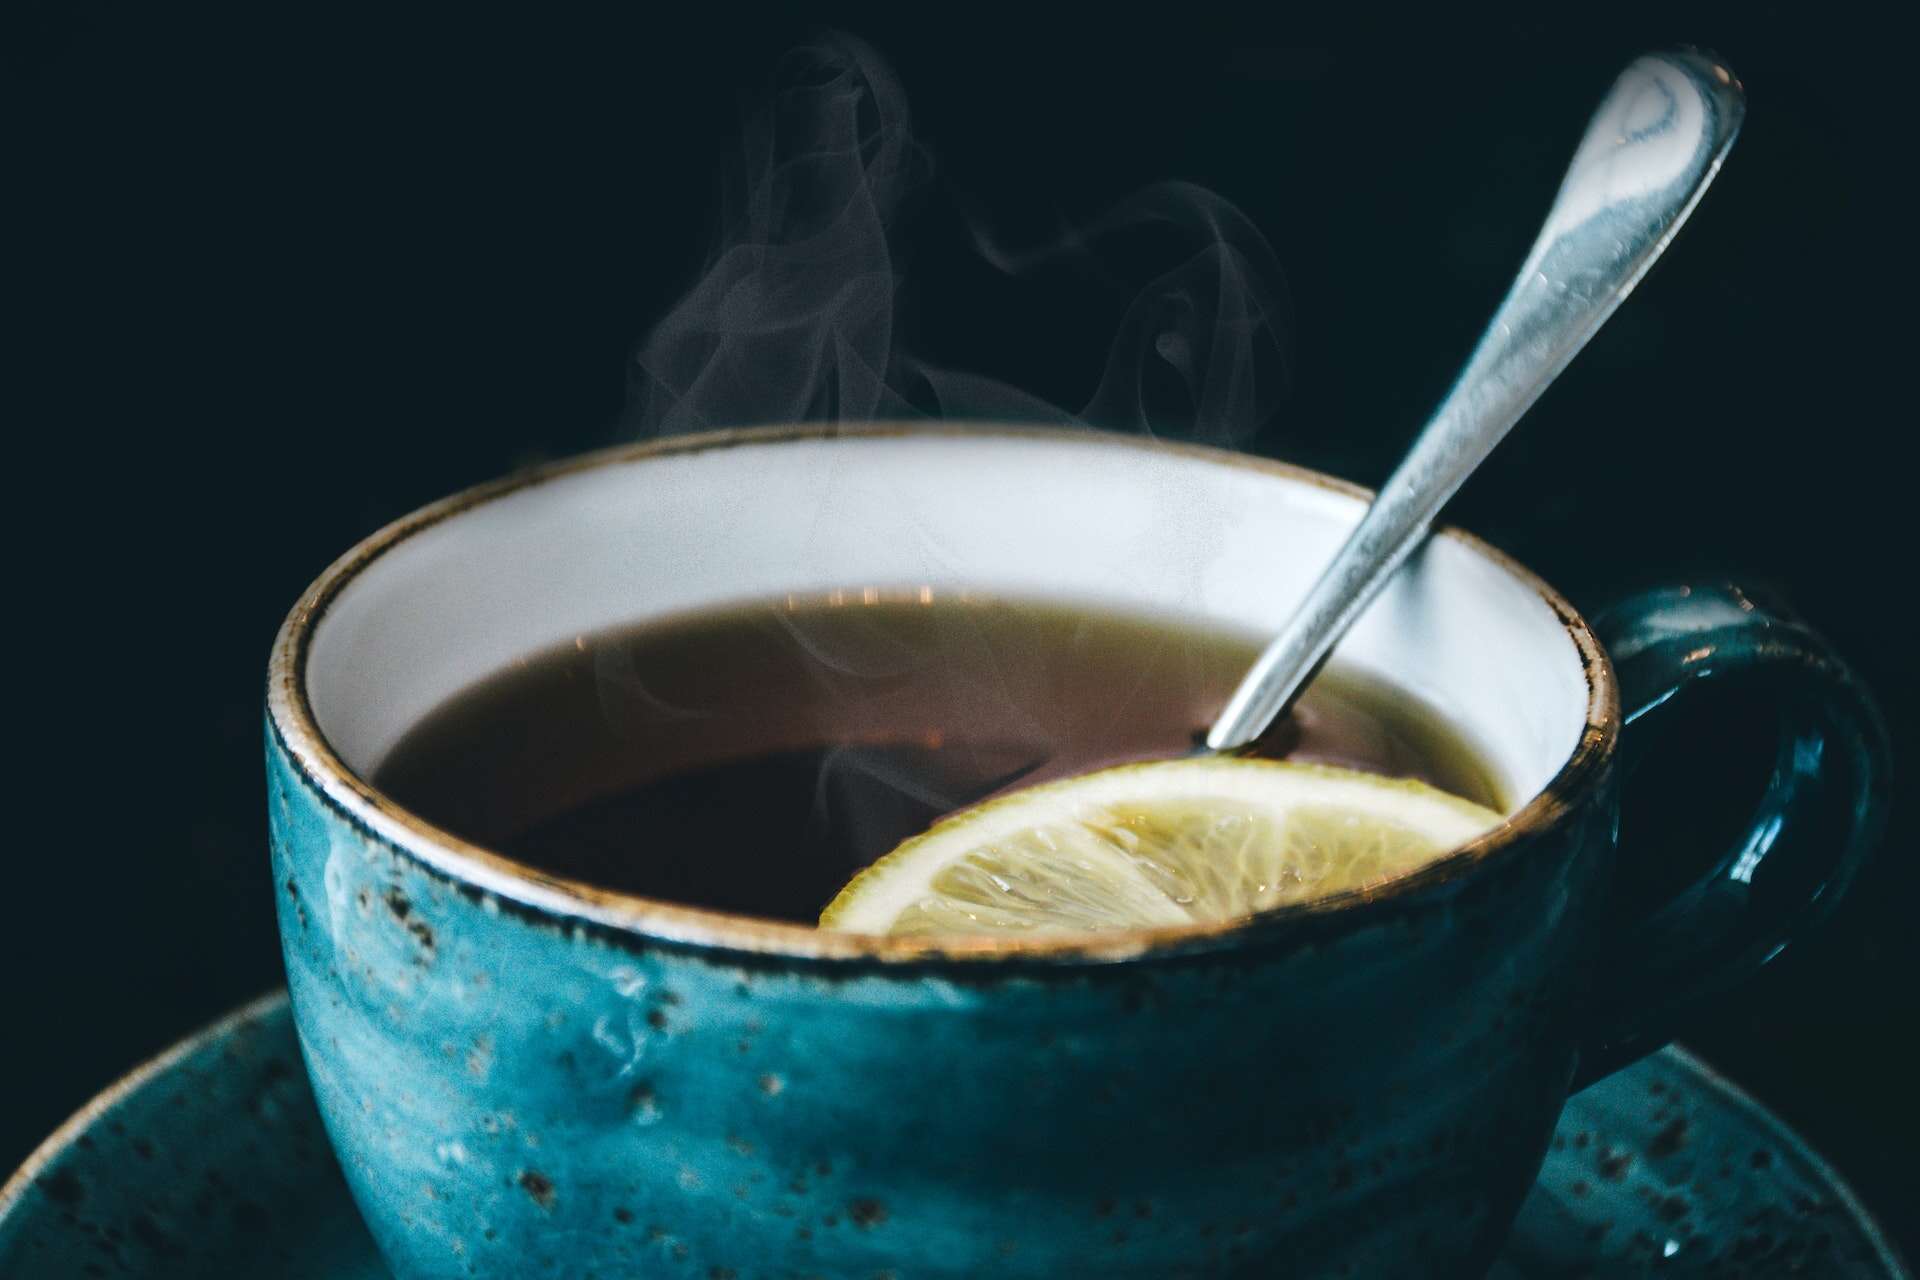 A blue teacup with isomalt and a lemon